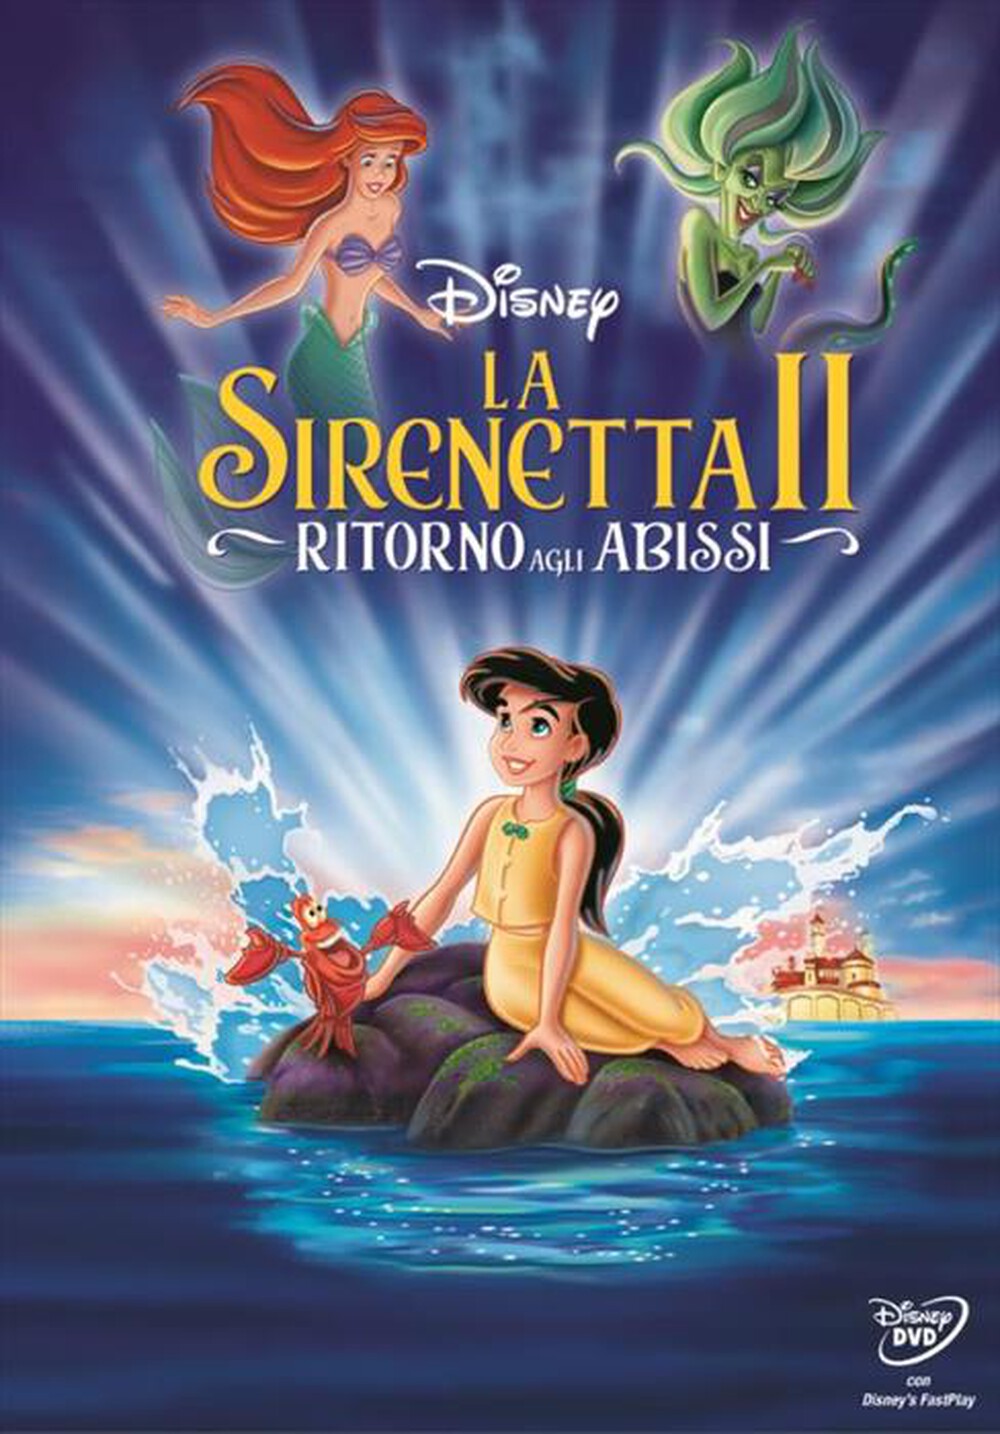 "EAGLE PICTURES - Sirenetta 2 (La) - Ritorno Agli Abissi"